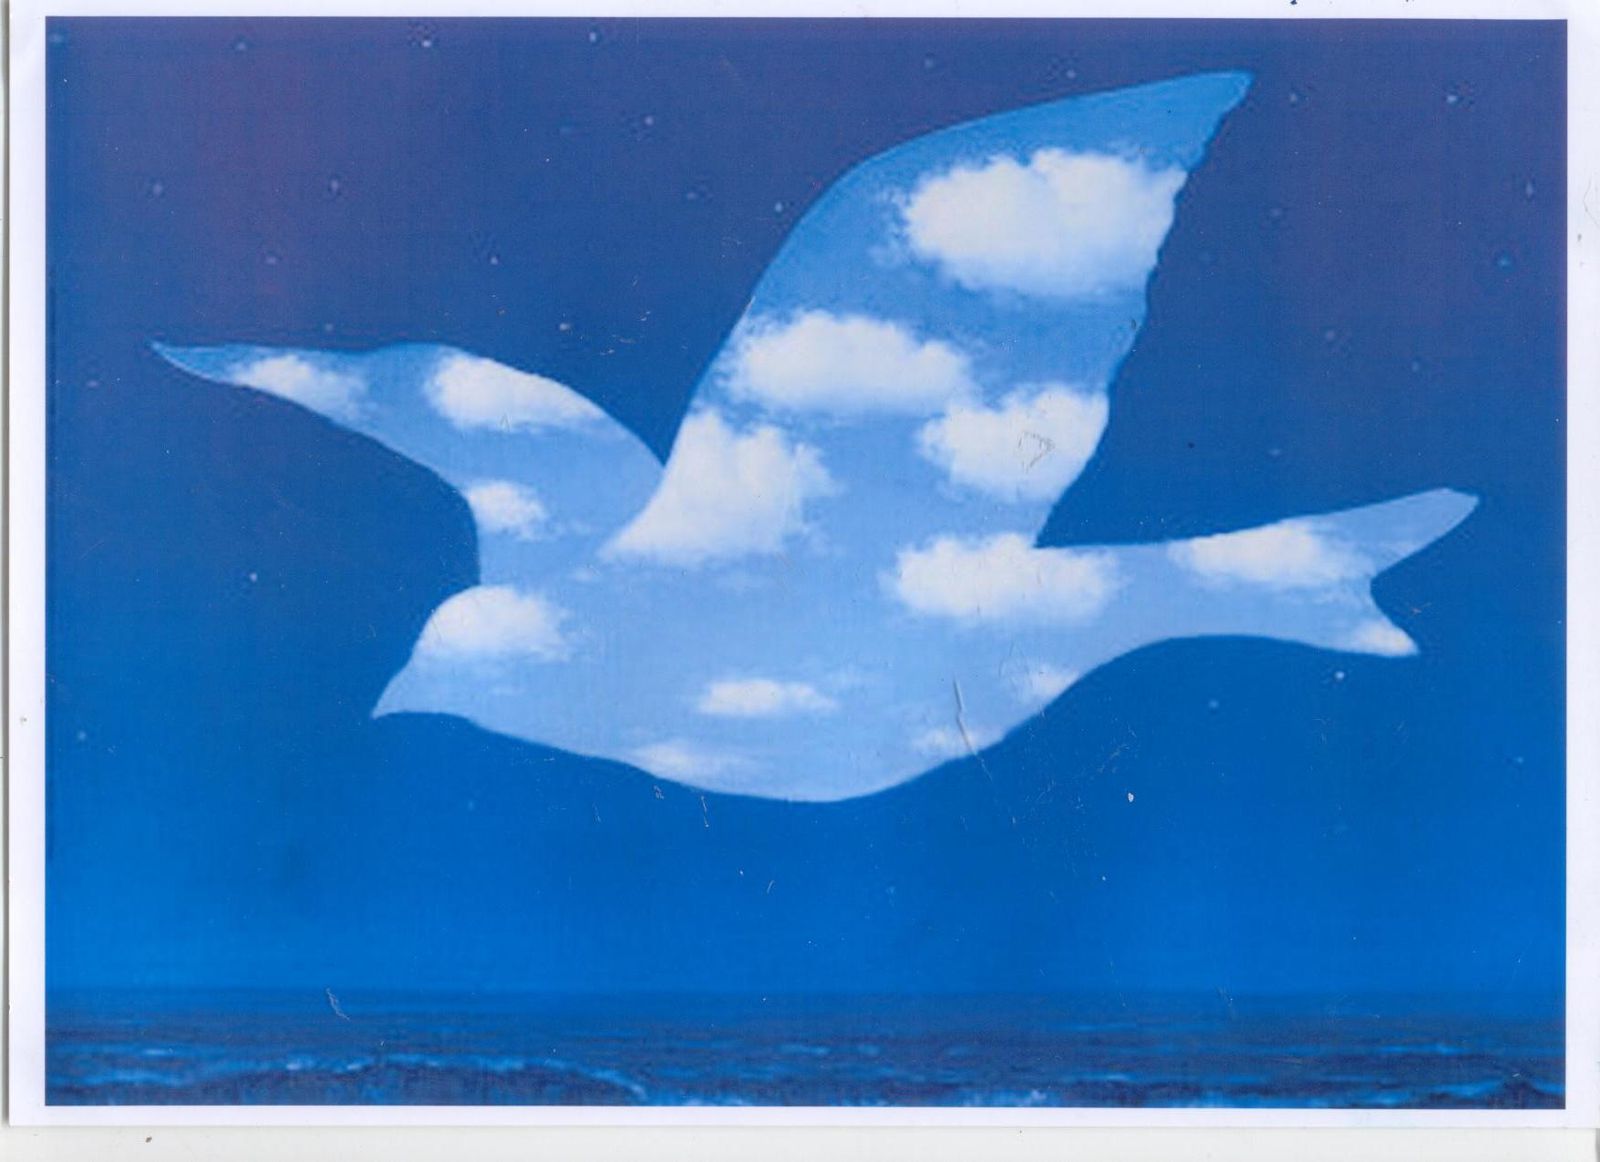 http://a402.idata.over-blog.com/2/83/15/92/oct09/enfants/magritte-oiseau/La_promesse_de_Rene_Magritte_1950_.jpg